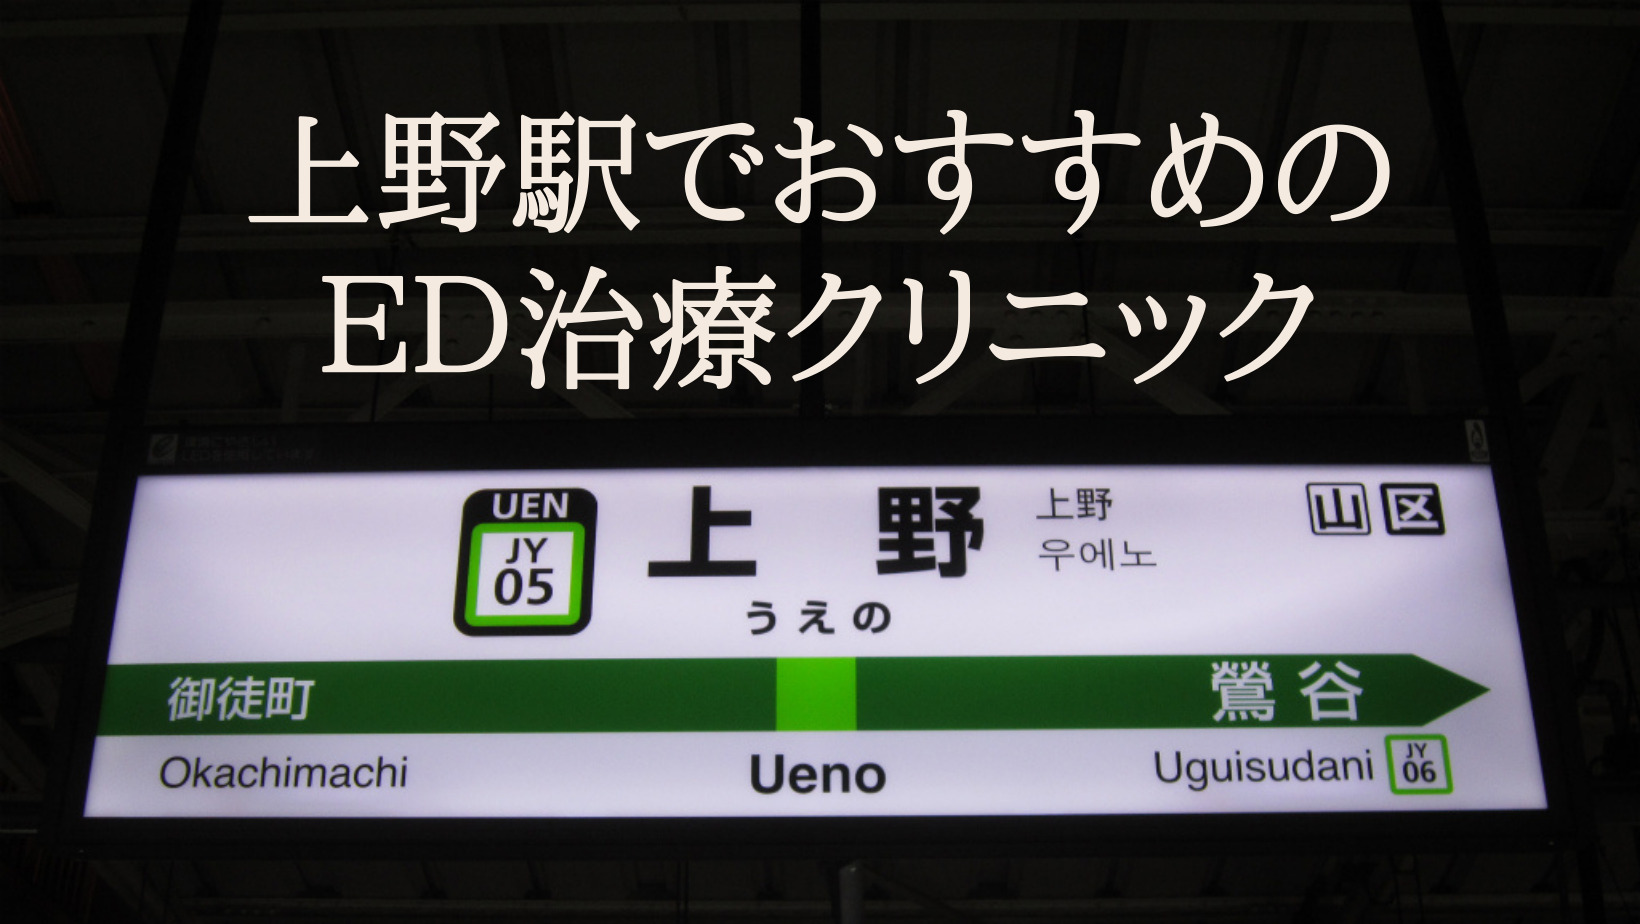 上野駅で評判の良いED治療専門クリニック11院を厳選